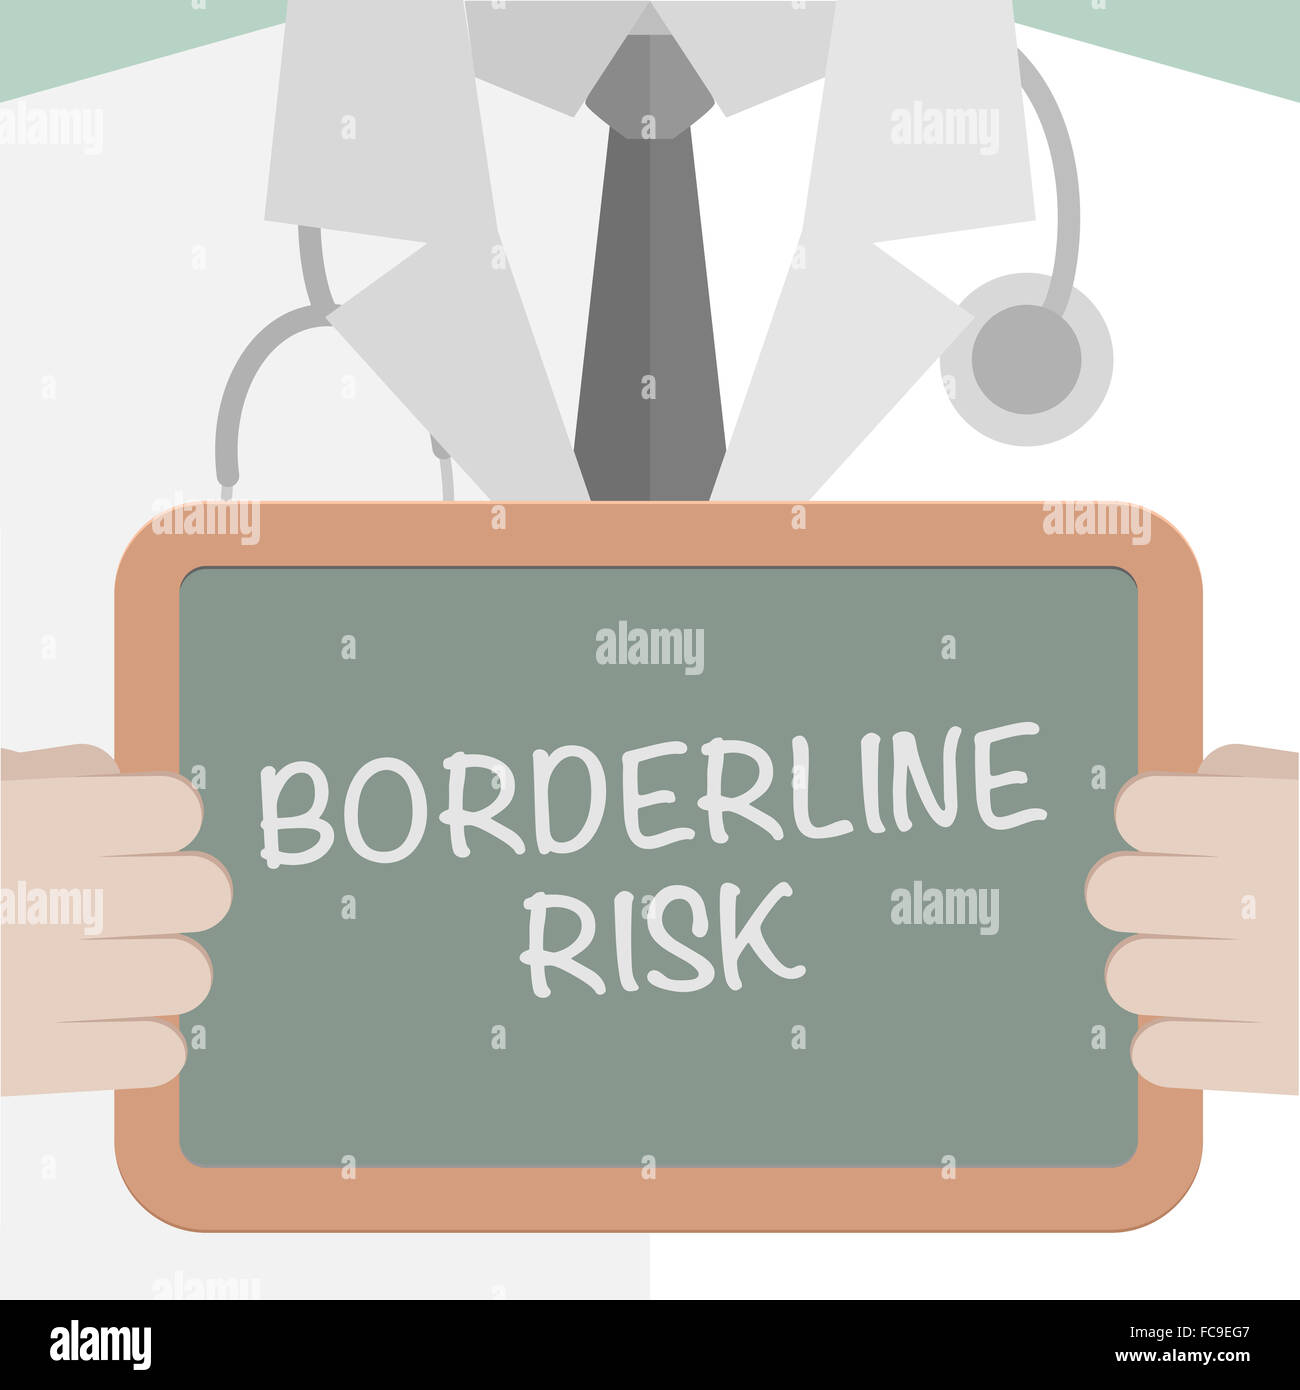 Medical Board Borderline Risk Stock Photo